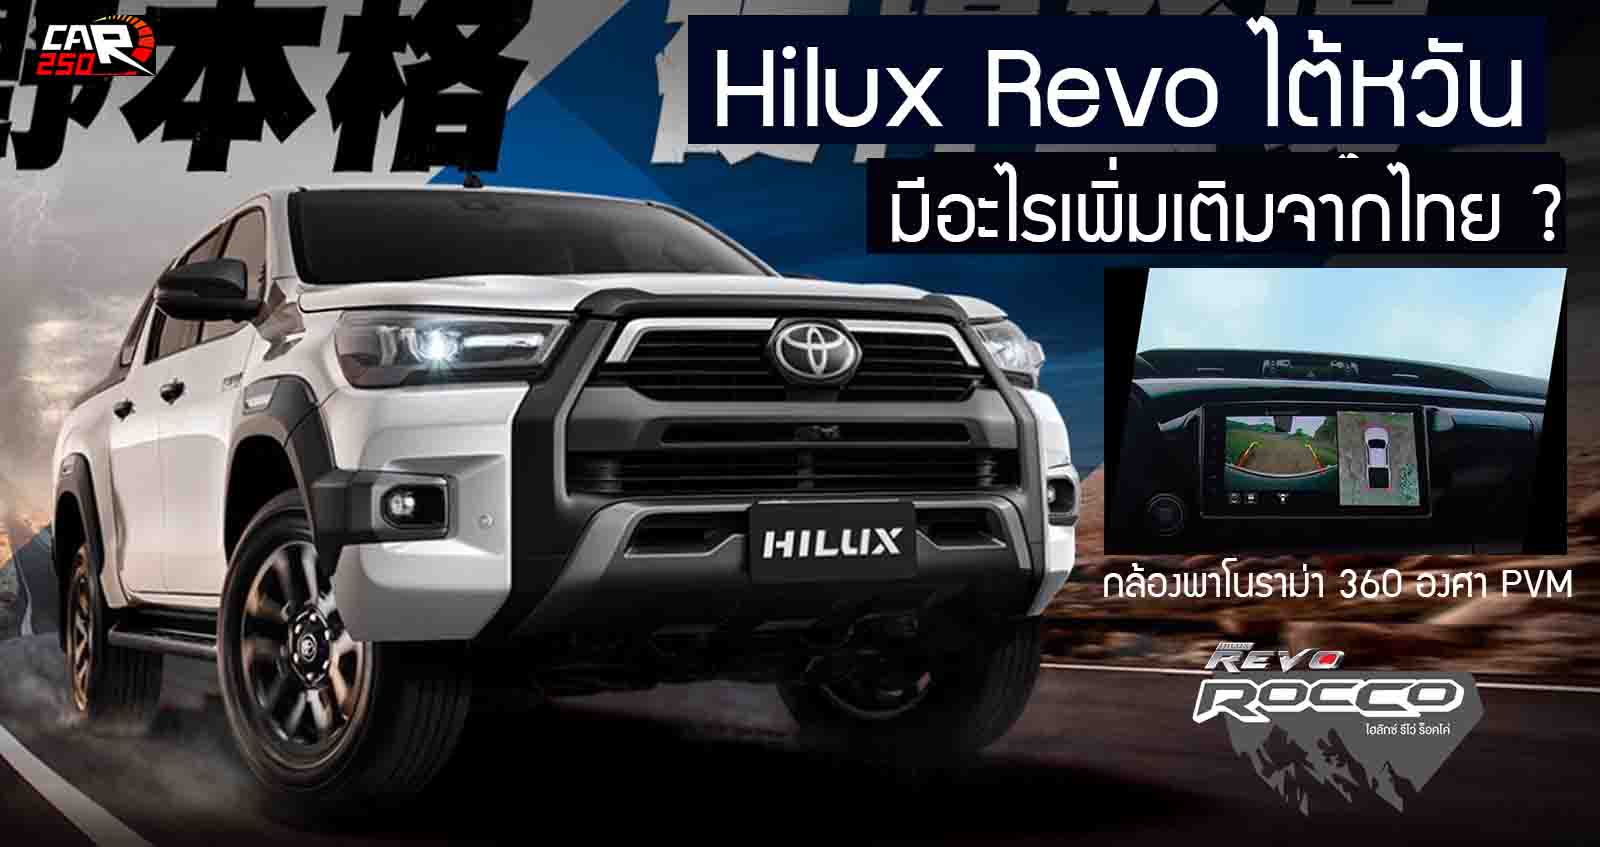 Toyota Hilux Revo ไต้หวัน ราคาแรง 1.53 ล้านบาท + กล้อง 360 องศา เบาะคนขับปรับไฟฟ้า 8 ทิศทาง